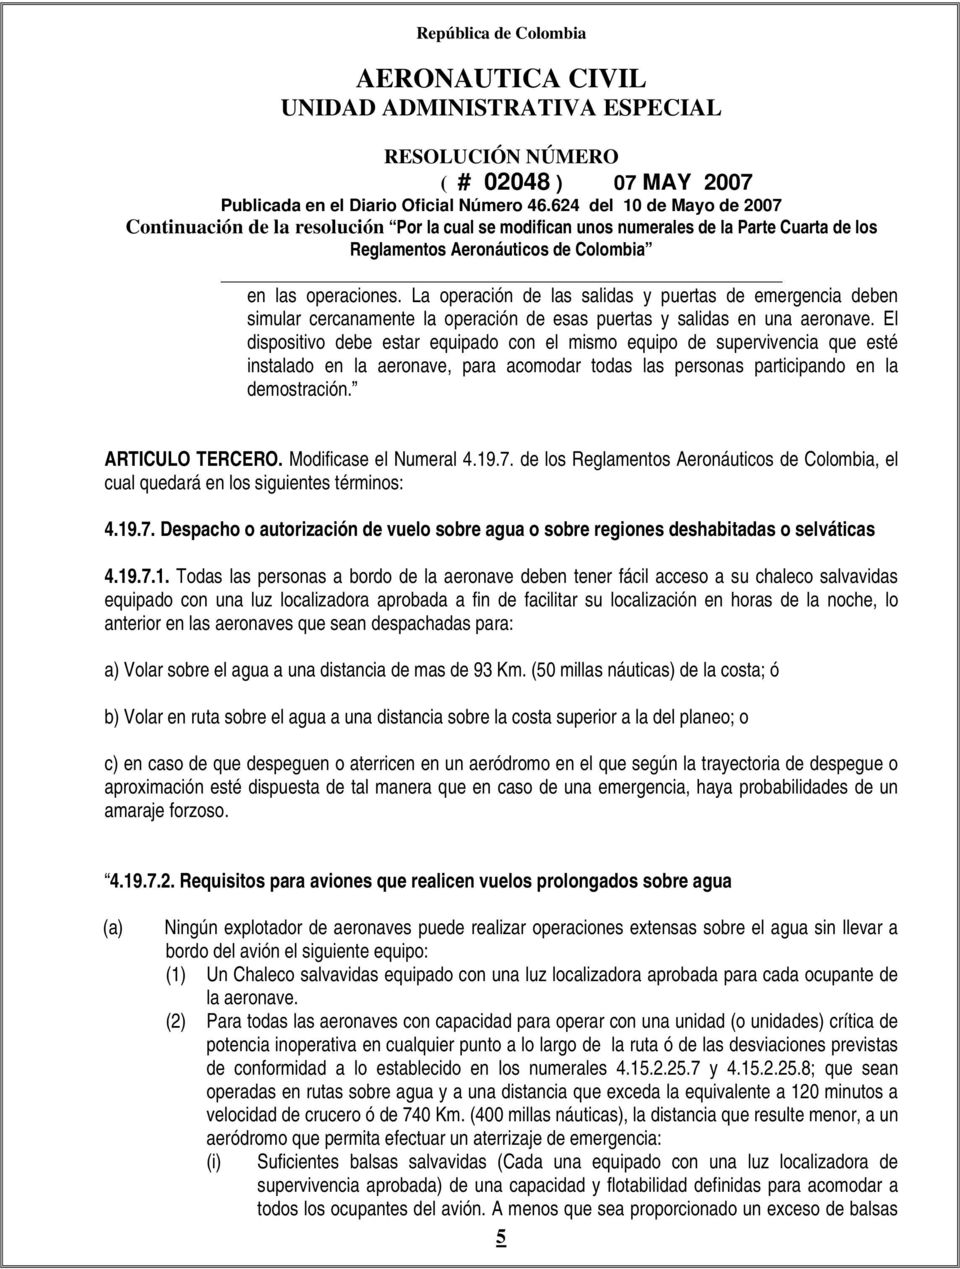 Modificase el Numeral 4.19.7. de los Reglamentos Aeronáuticos de Colombia, el cual quedará en los siguientes términos: 4.19.7. Despacho o autorización de vuelo sobre agua o sobre regiones deshabitadas o selváticas 4.